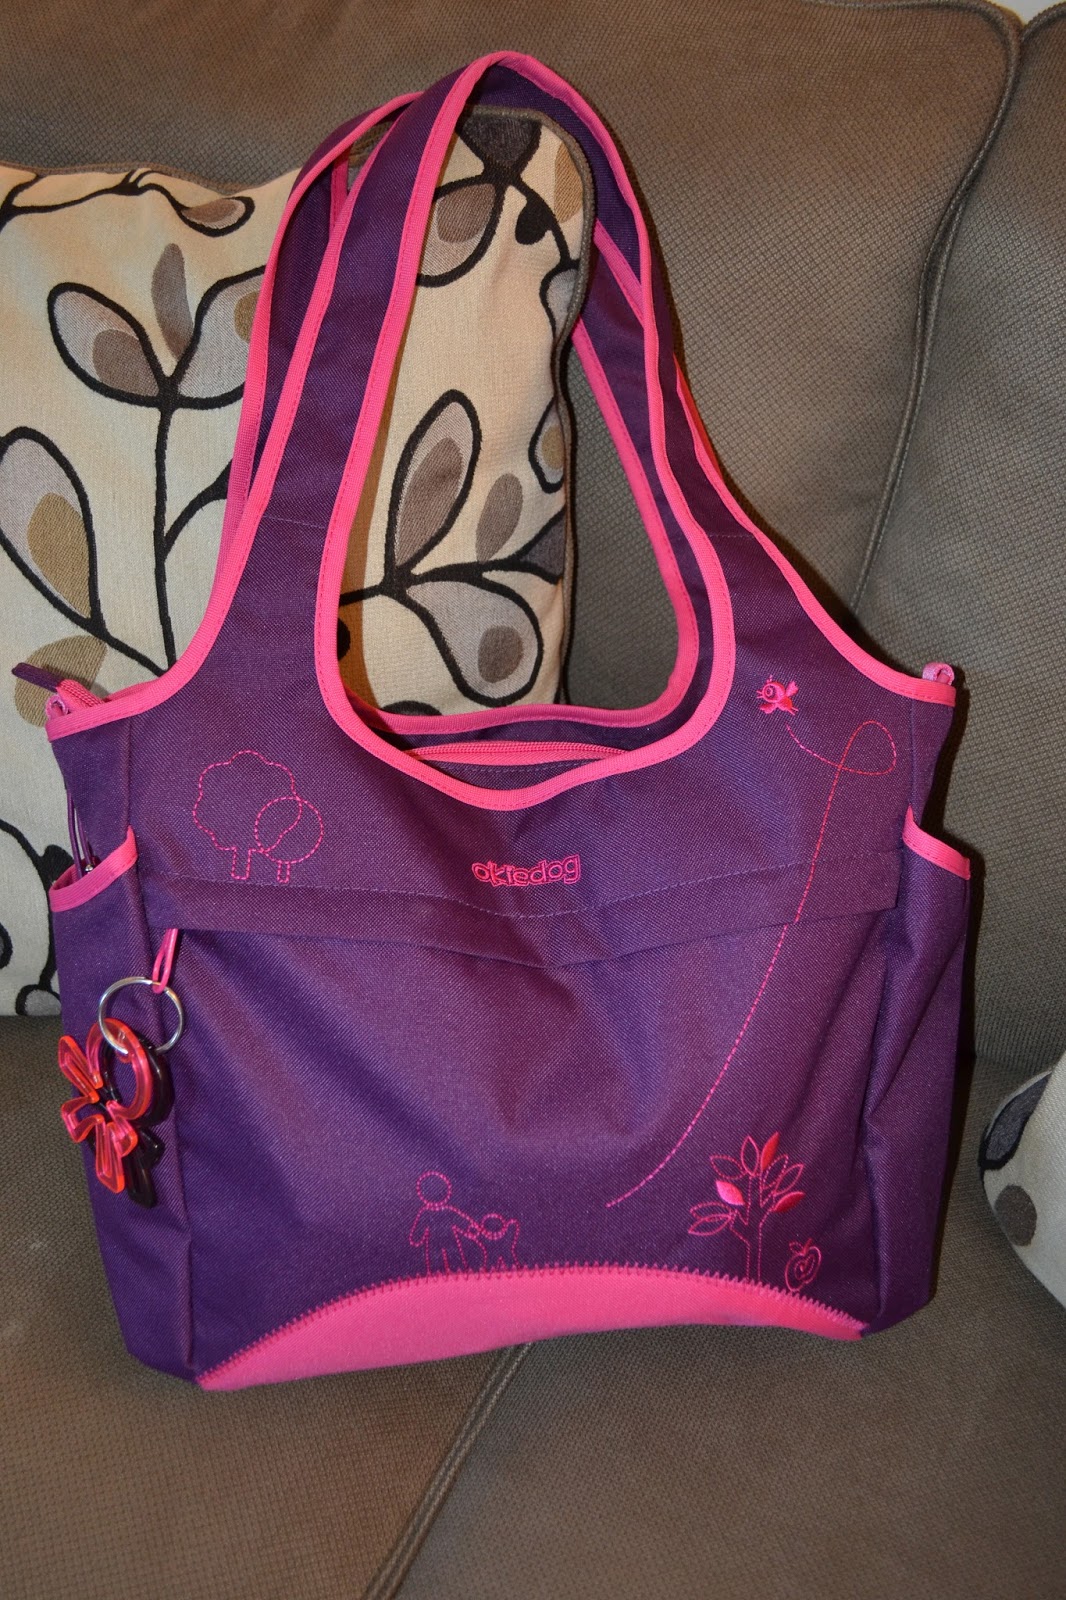 Mom&#39;s Got a Brand New Bag: OkieDog Saha Tote Diaper Bag Review!